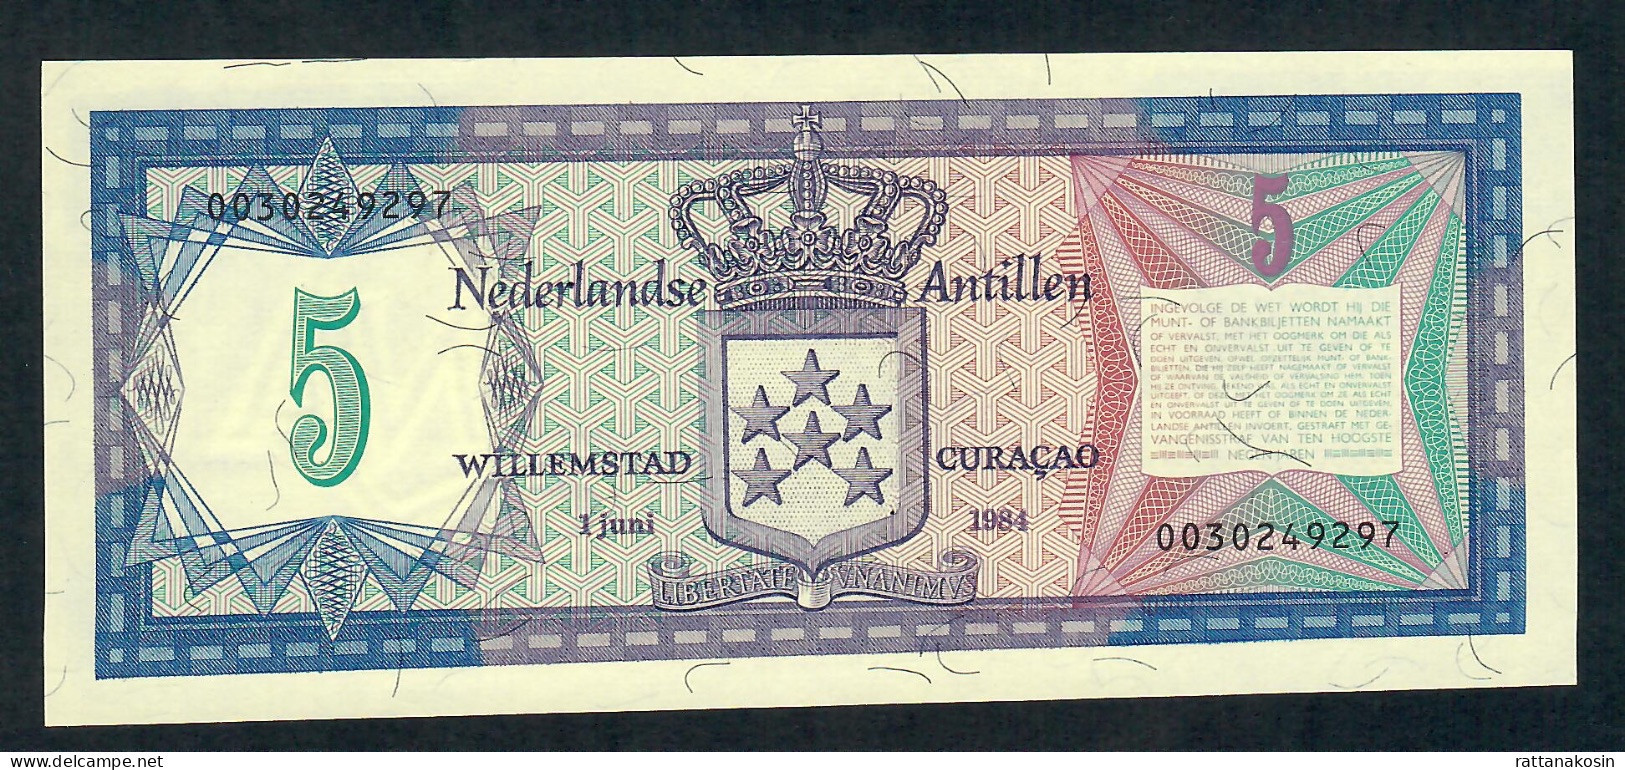 NETHERLANDS ANTILLES  P15b 5 GULDEN  1.6.1984 CURACAO Signature 7  UNC. - Autres - Amérique